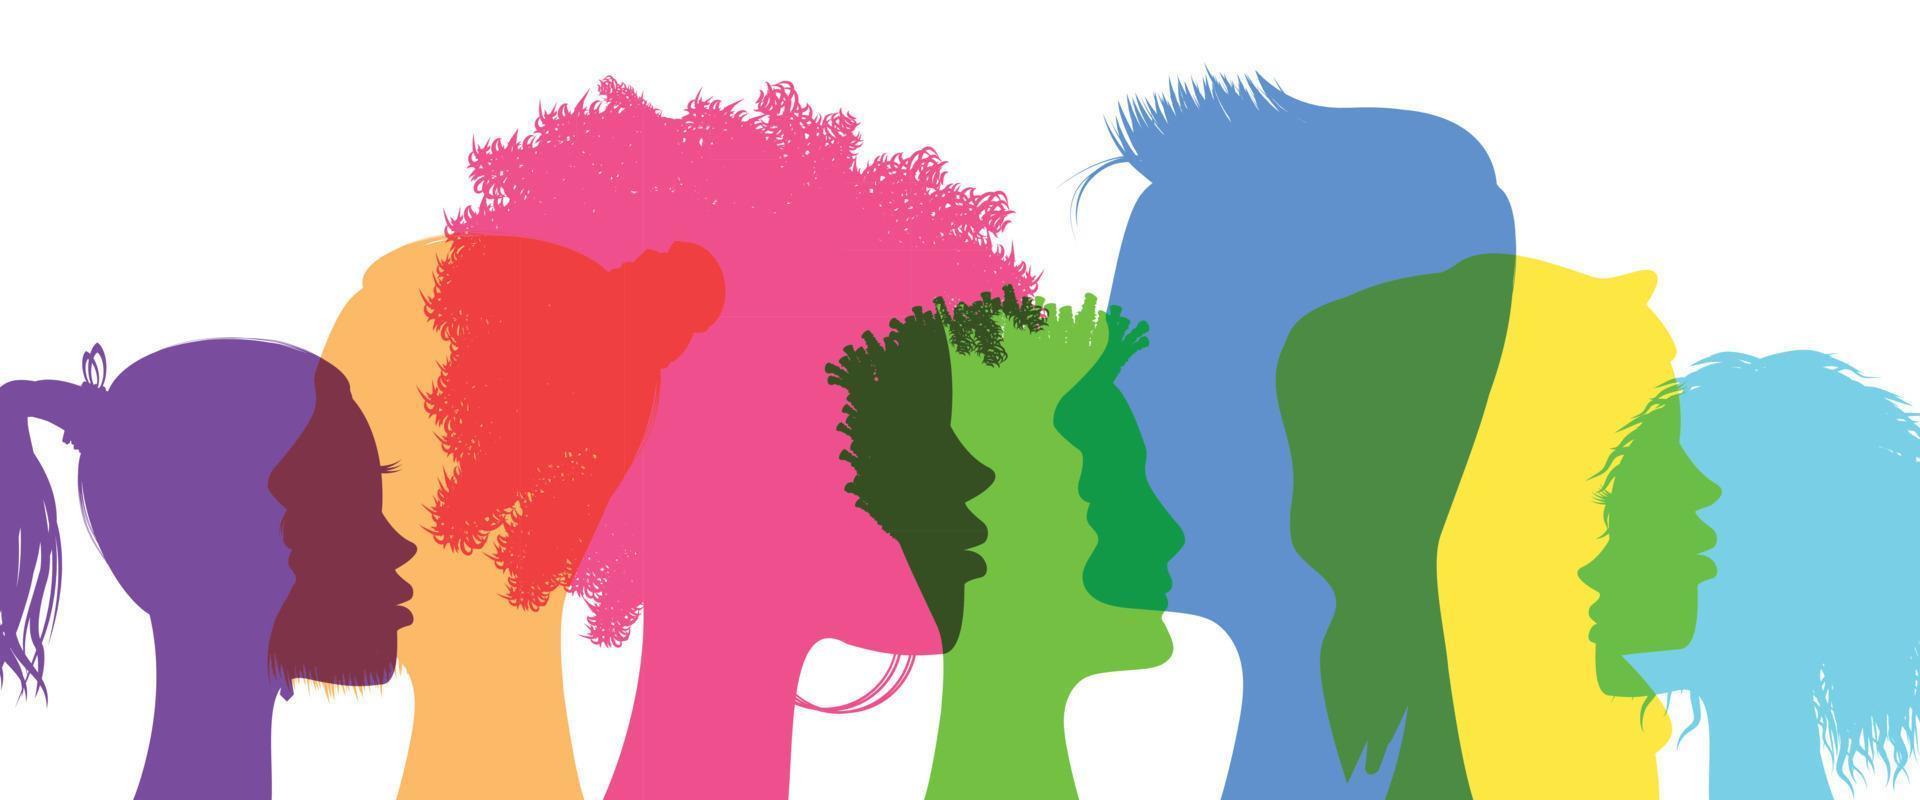 Mens en vrouw silhouetten met verschillend uiterlijk - verscheidenheid concept vector